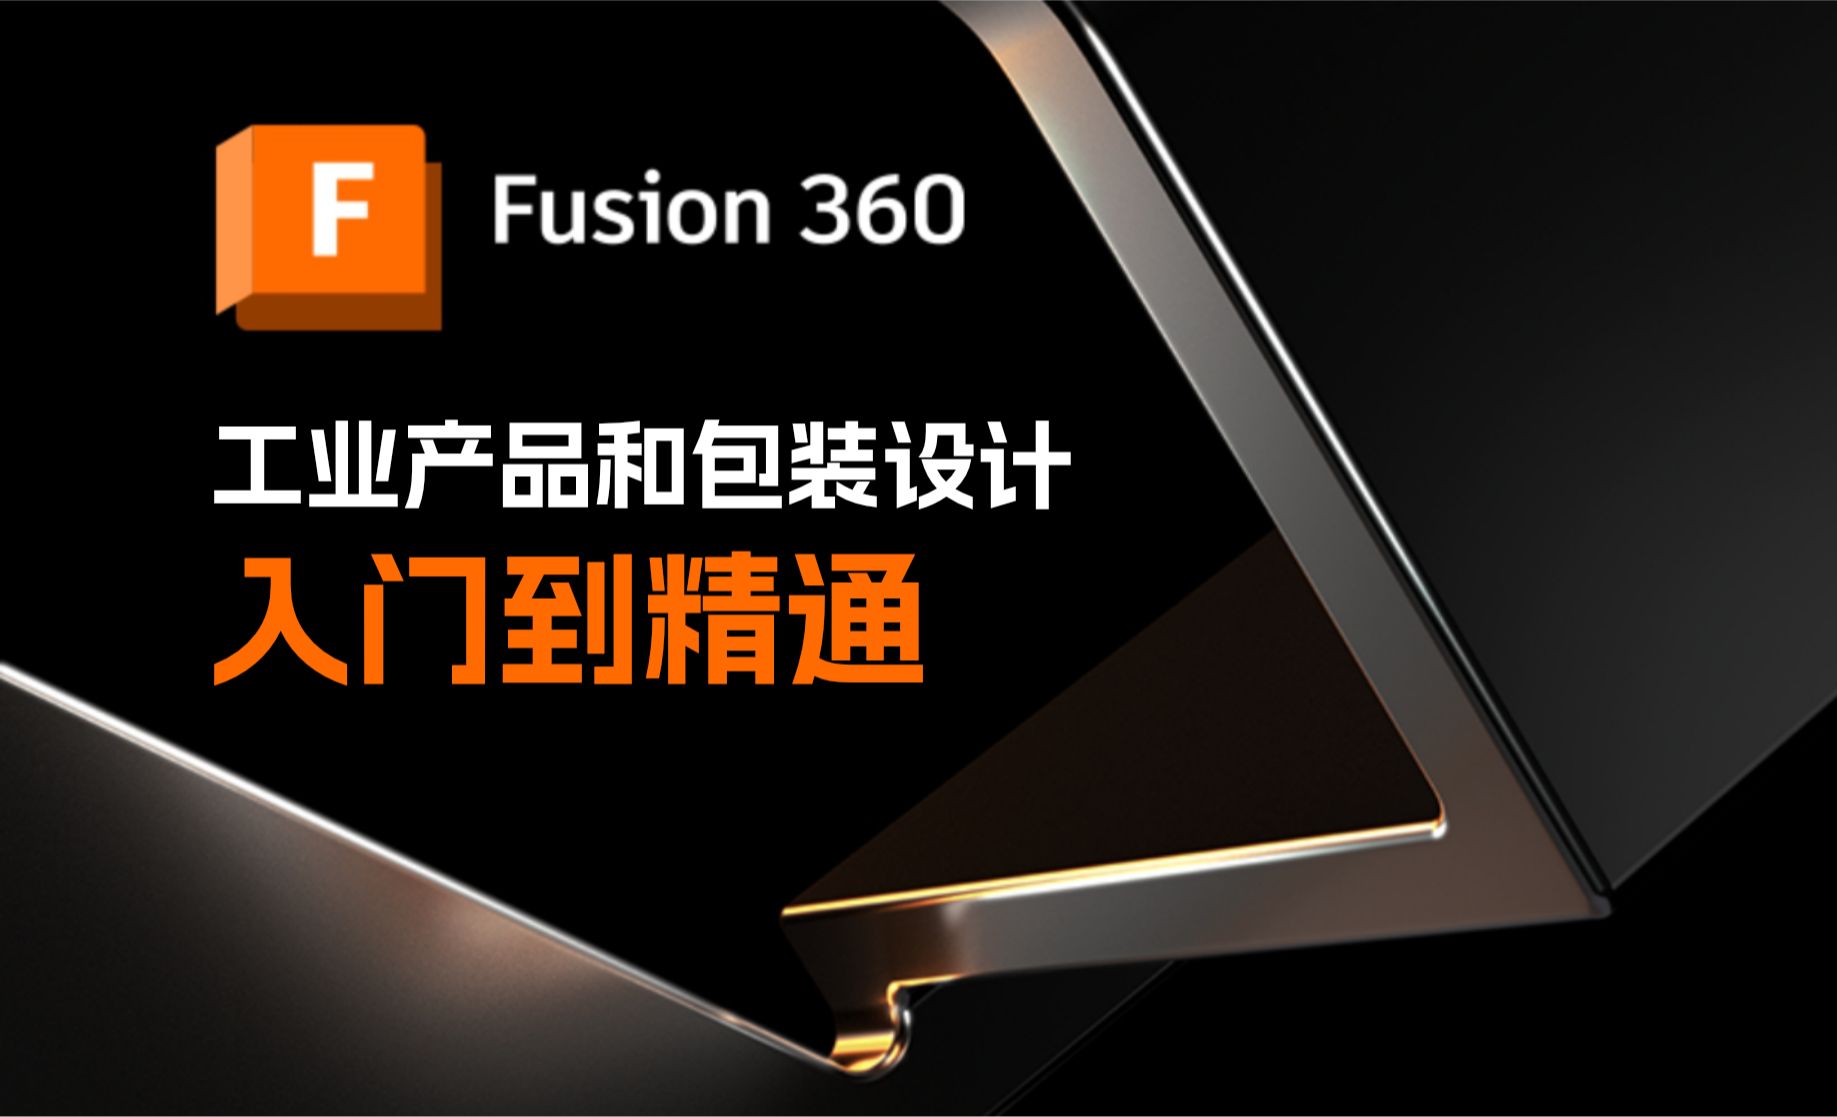 05.Fusion 360 草图修改功能的基本使用方法